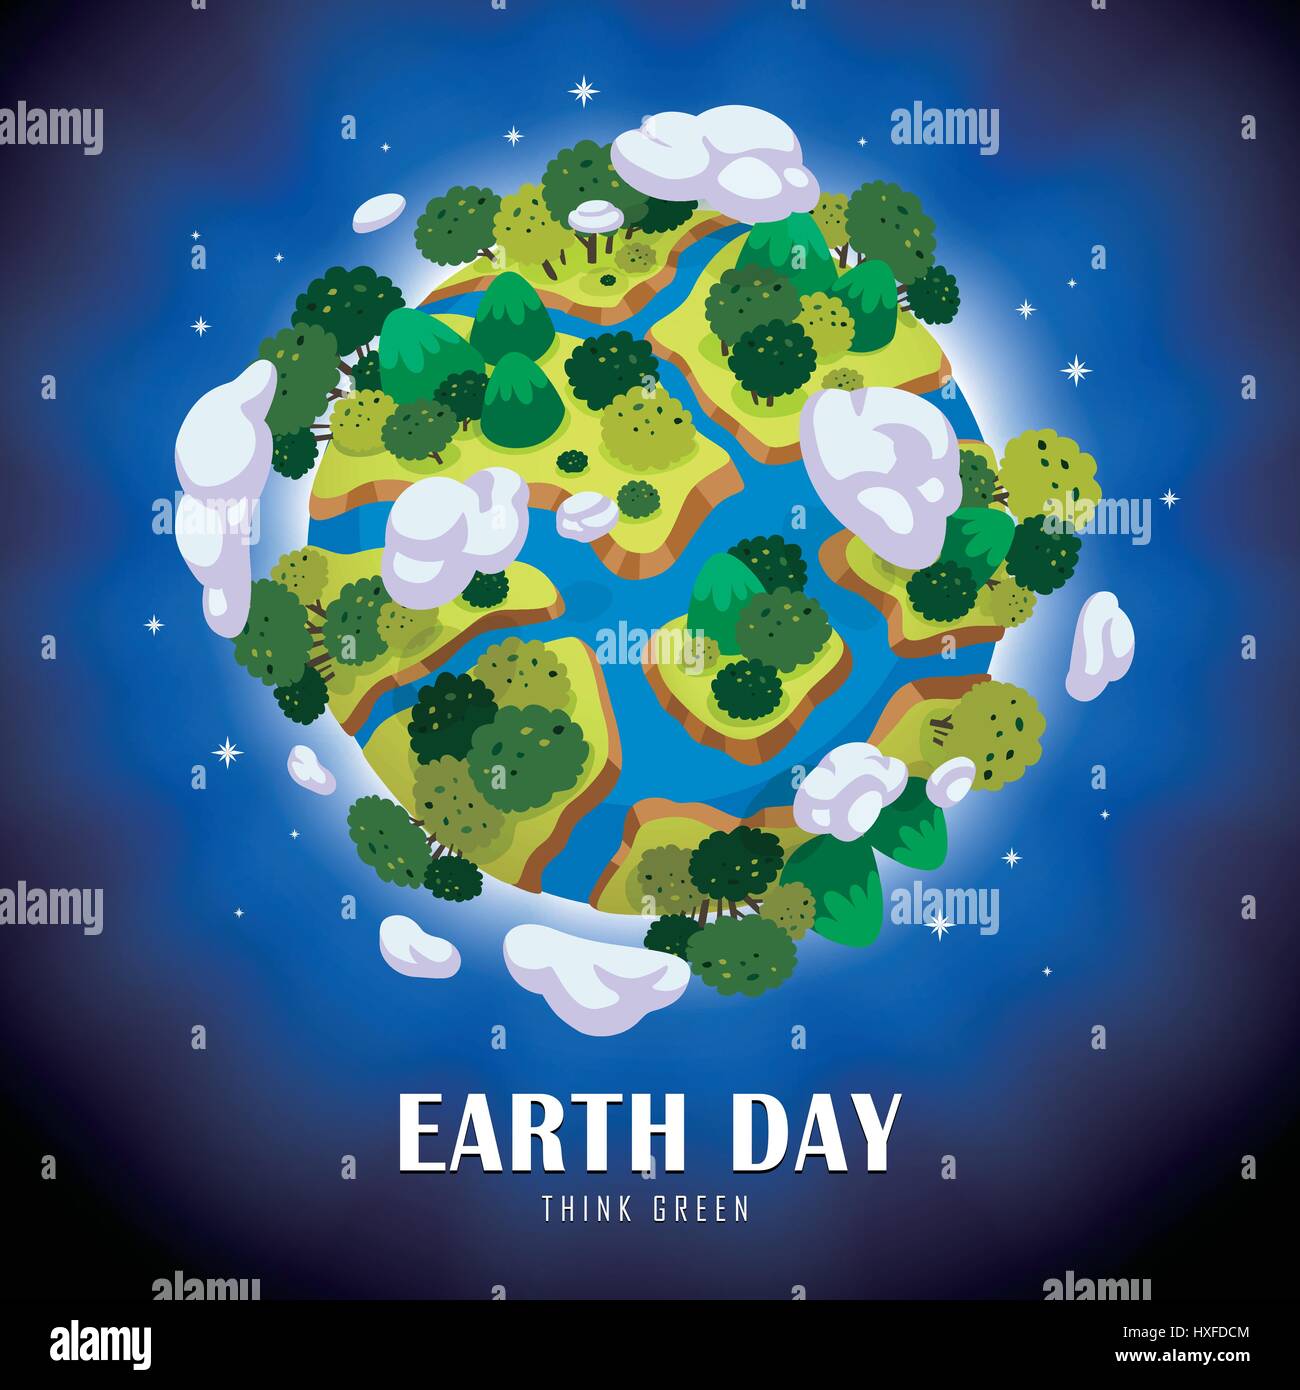 Illustration du jour de la terre, la terre isolé dans l'espace, fond bleu Illustration de Vecteur